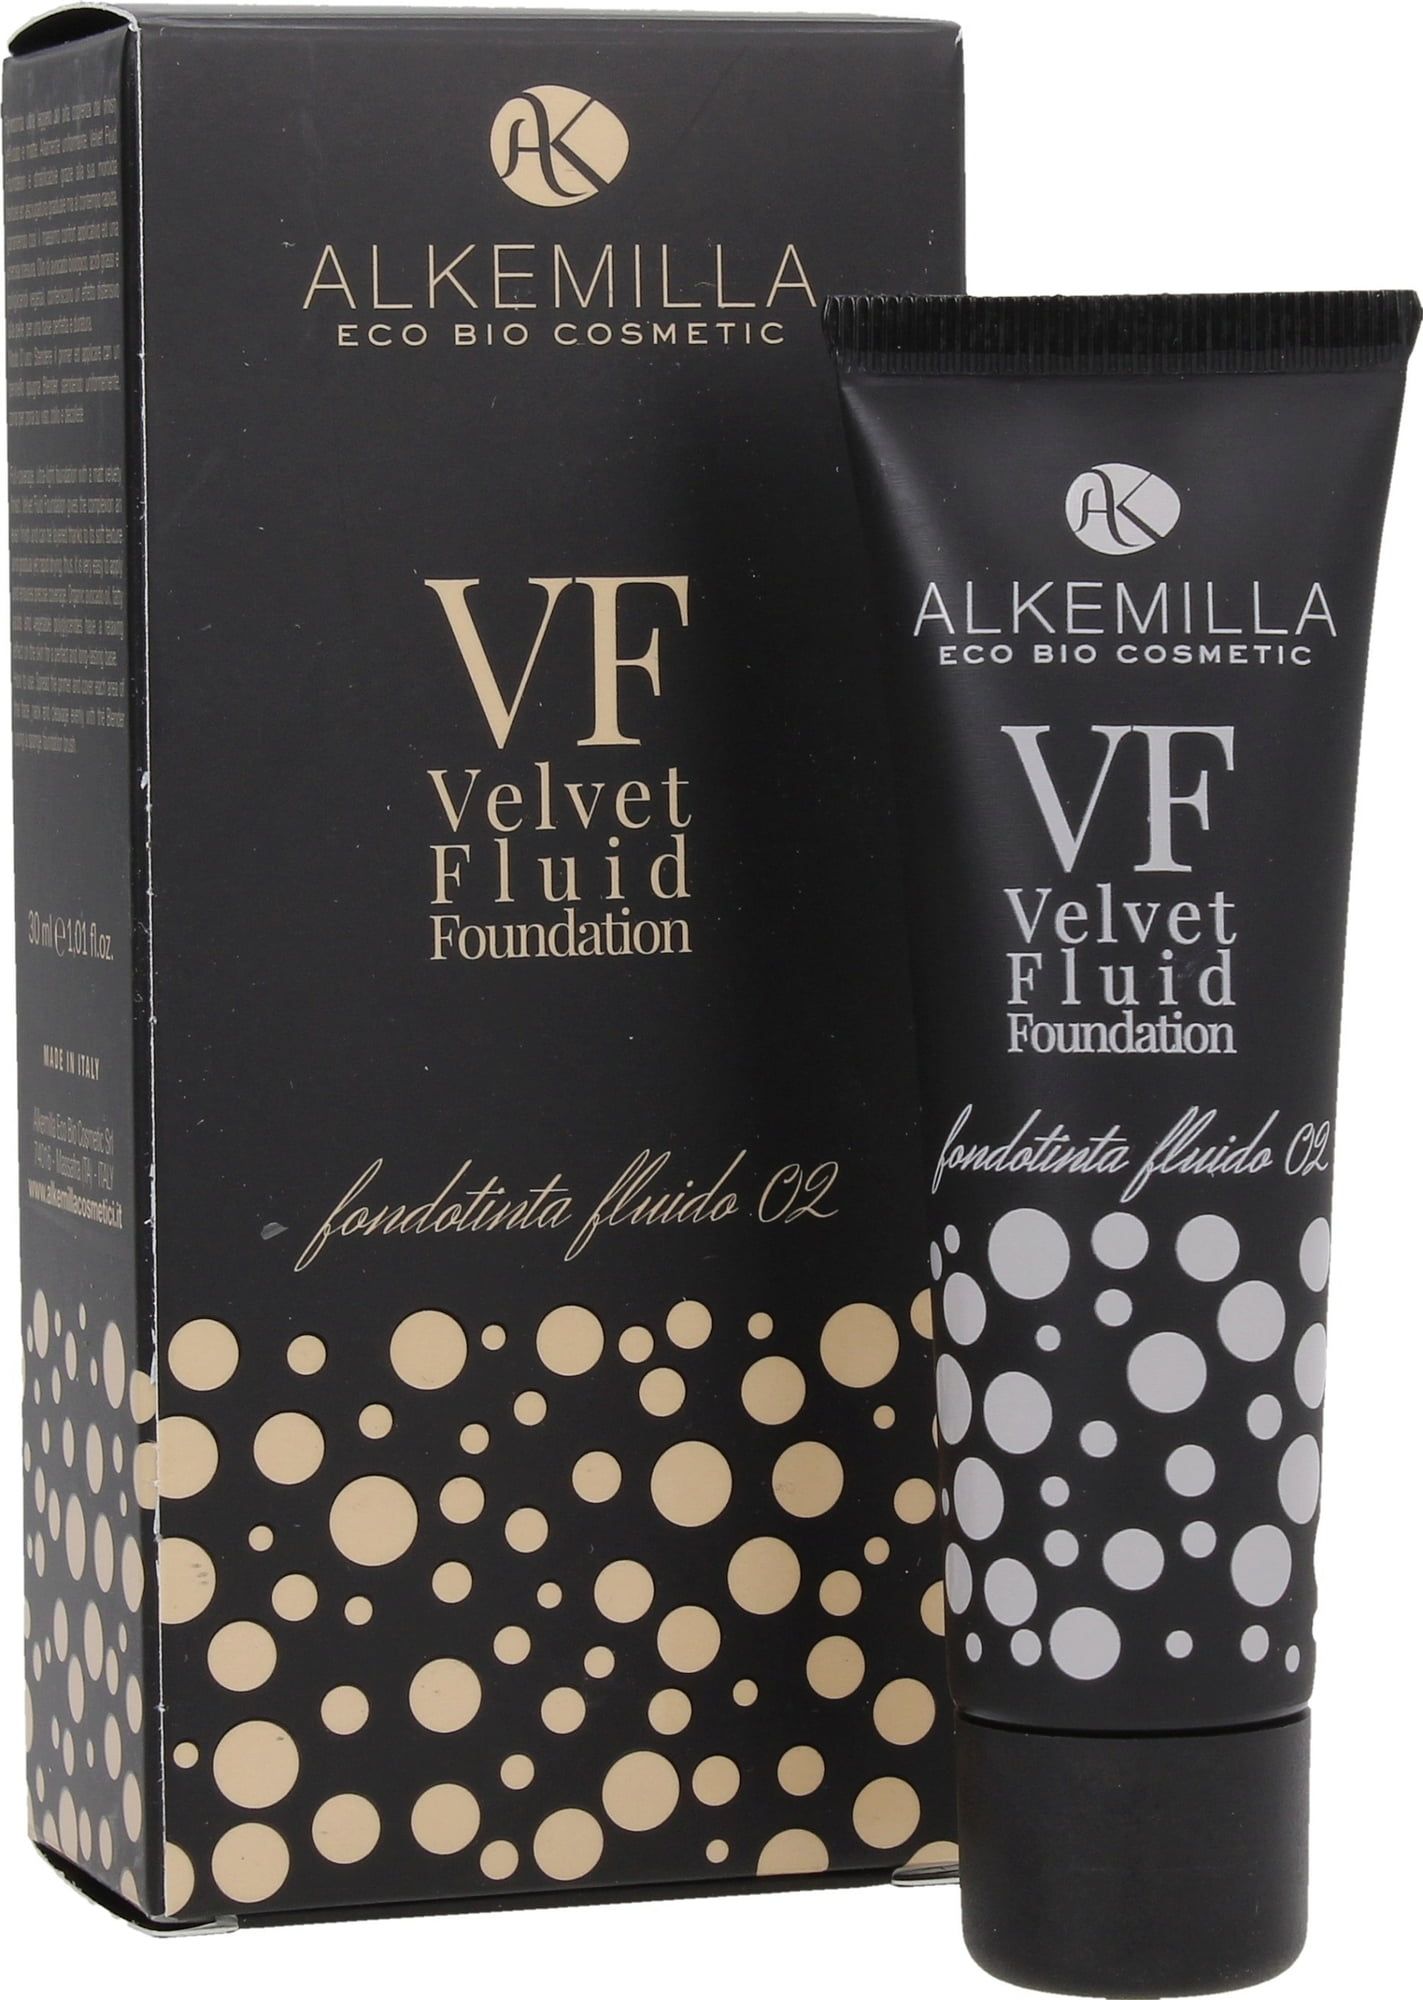 Alkemilla Velvet Fluid Foundation - Alkemilla Velvet Fluid Foundation 02, 30ml